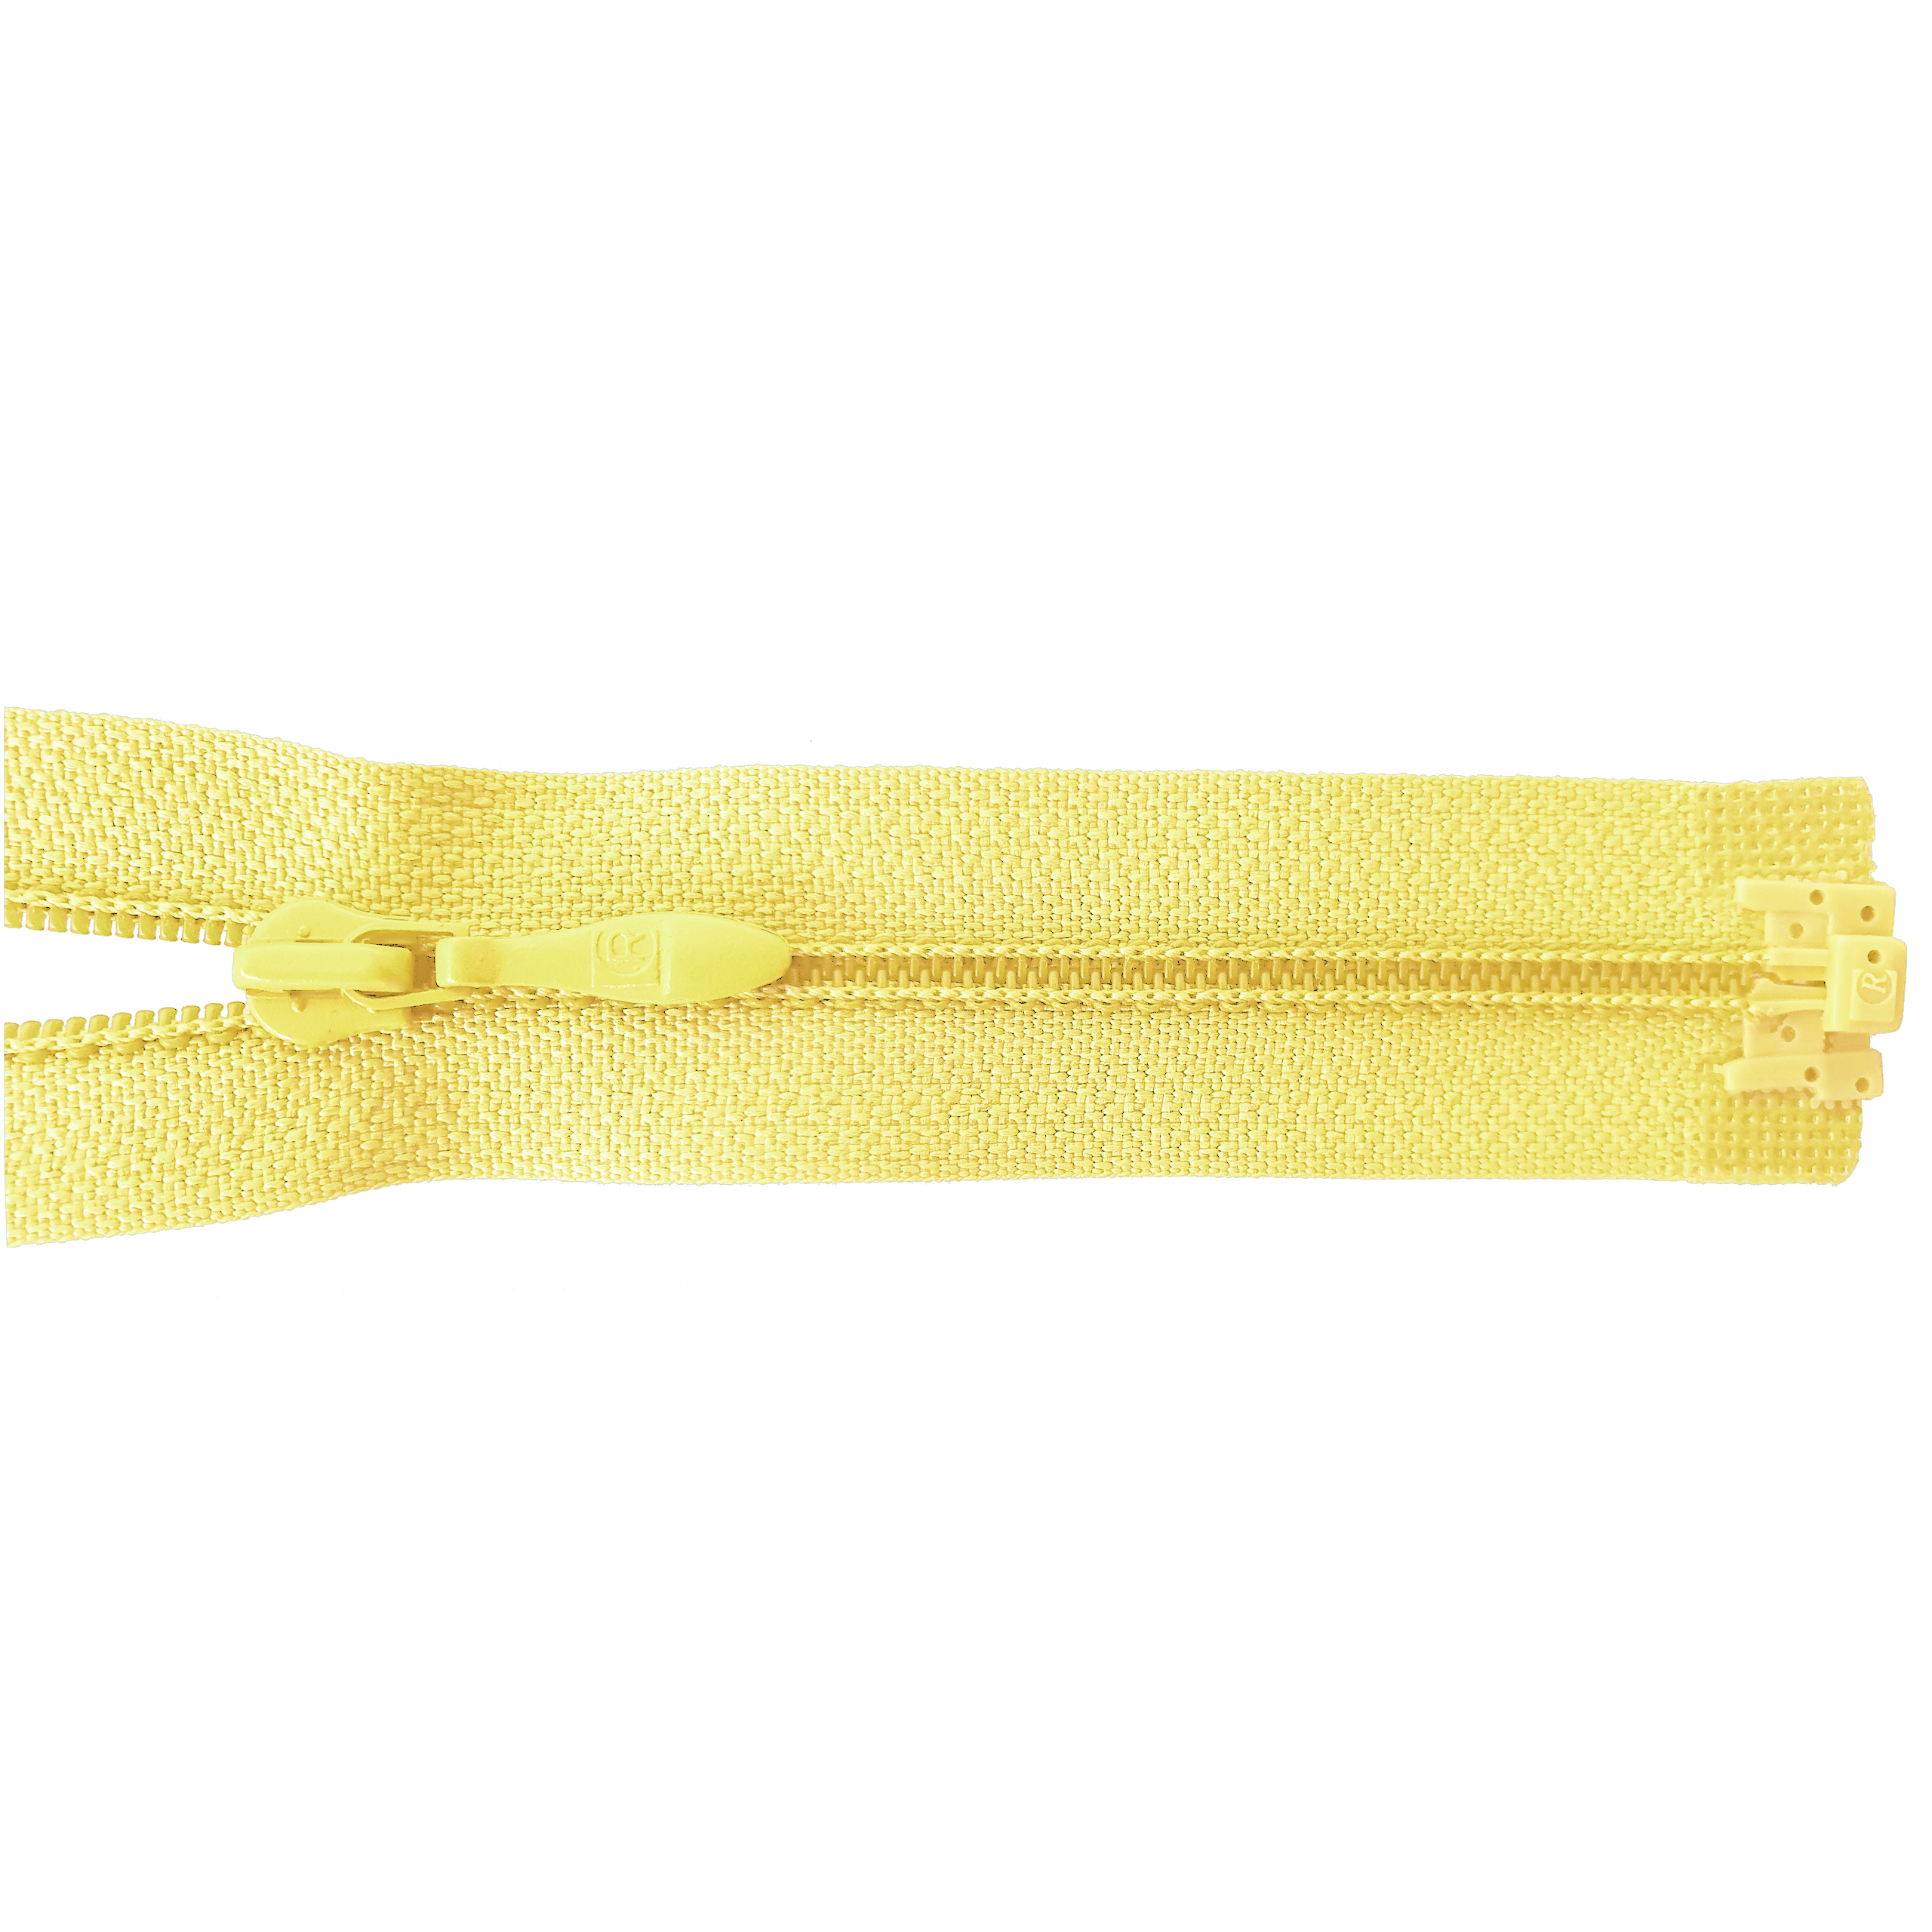 zipper 60cm,divisible, PES spiral, fein, light yellow